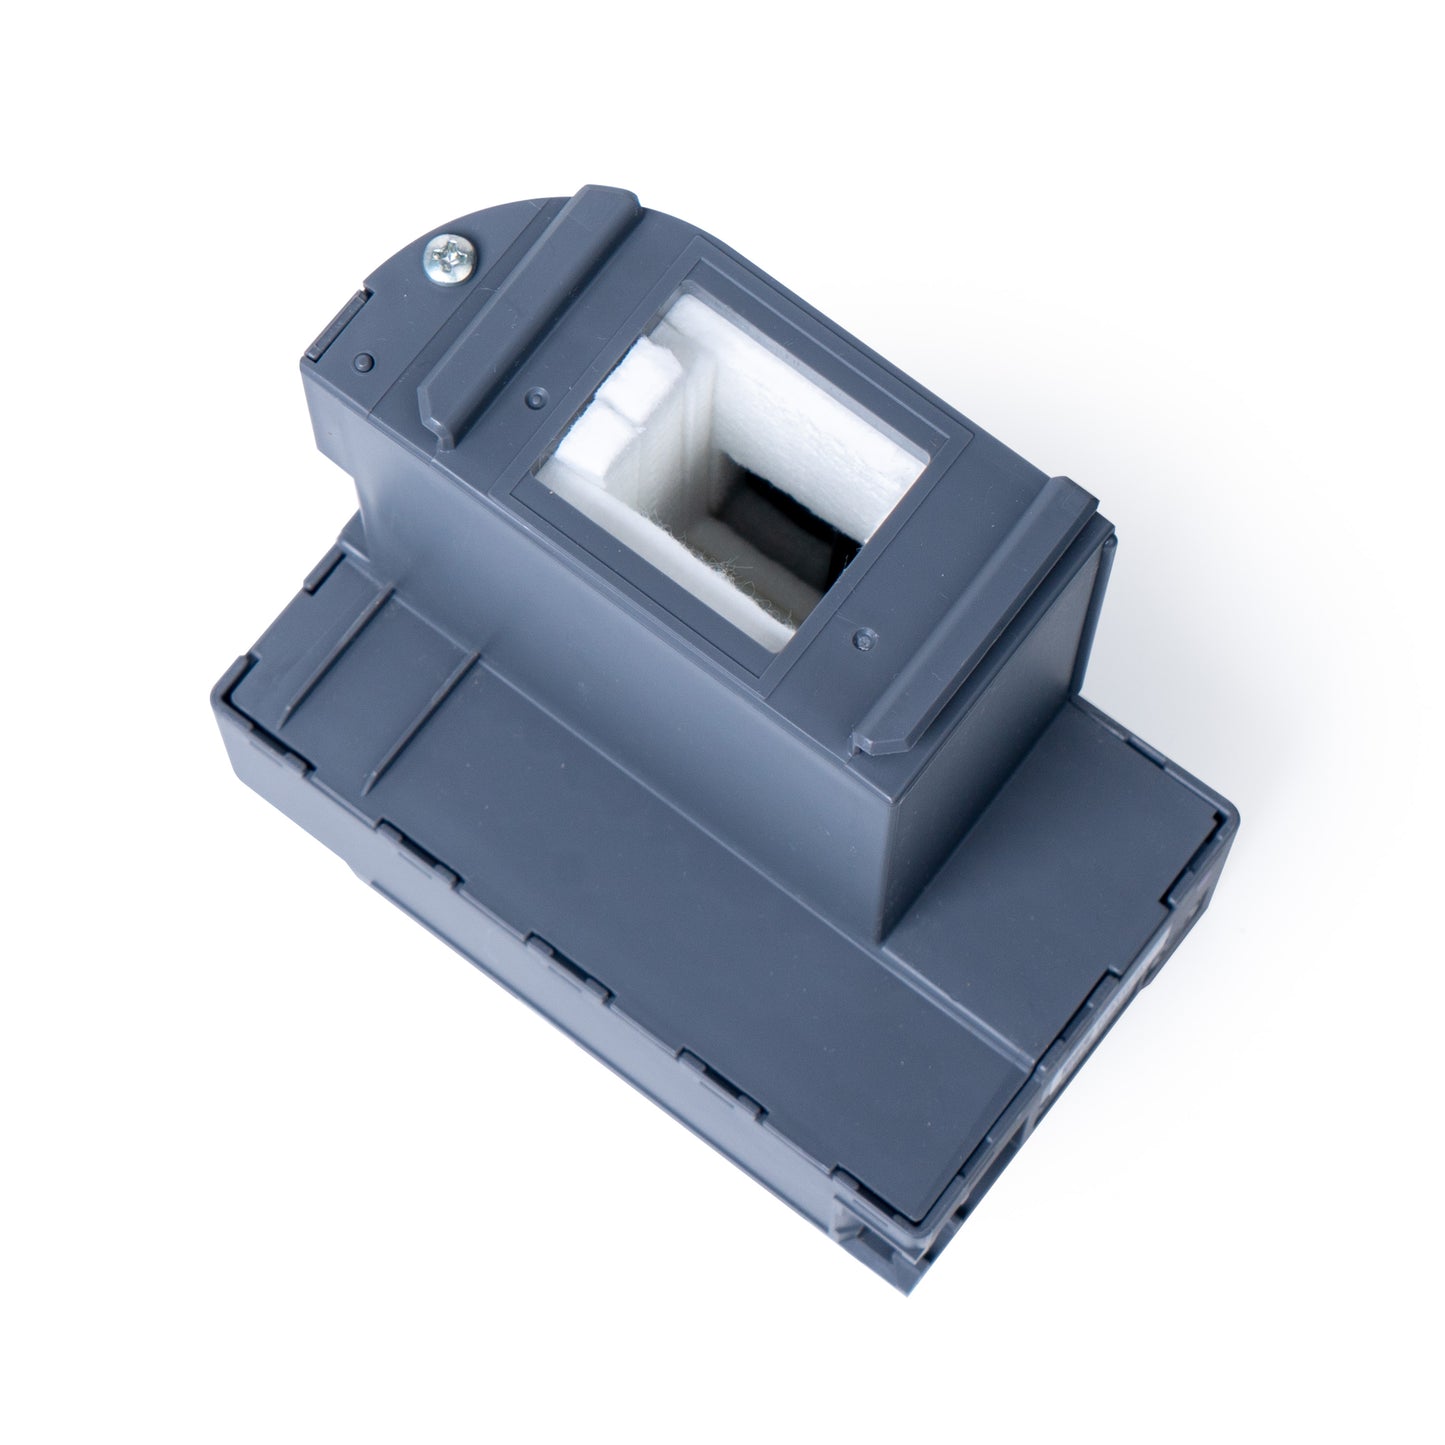 Epson® SureColor F170 Sublimation Printer Maintenance Tank